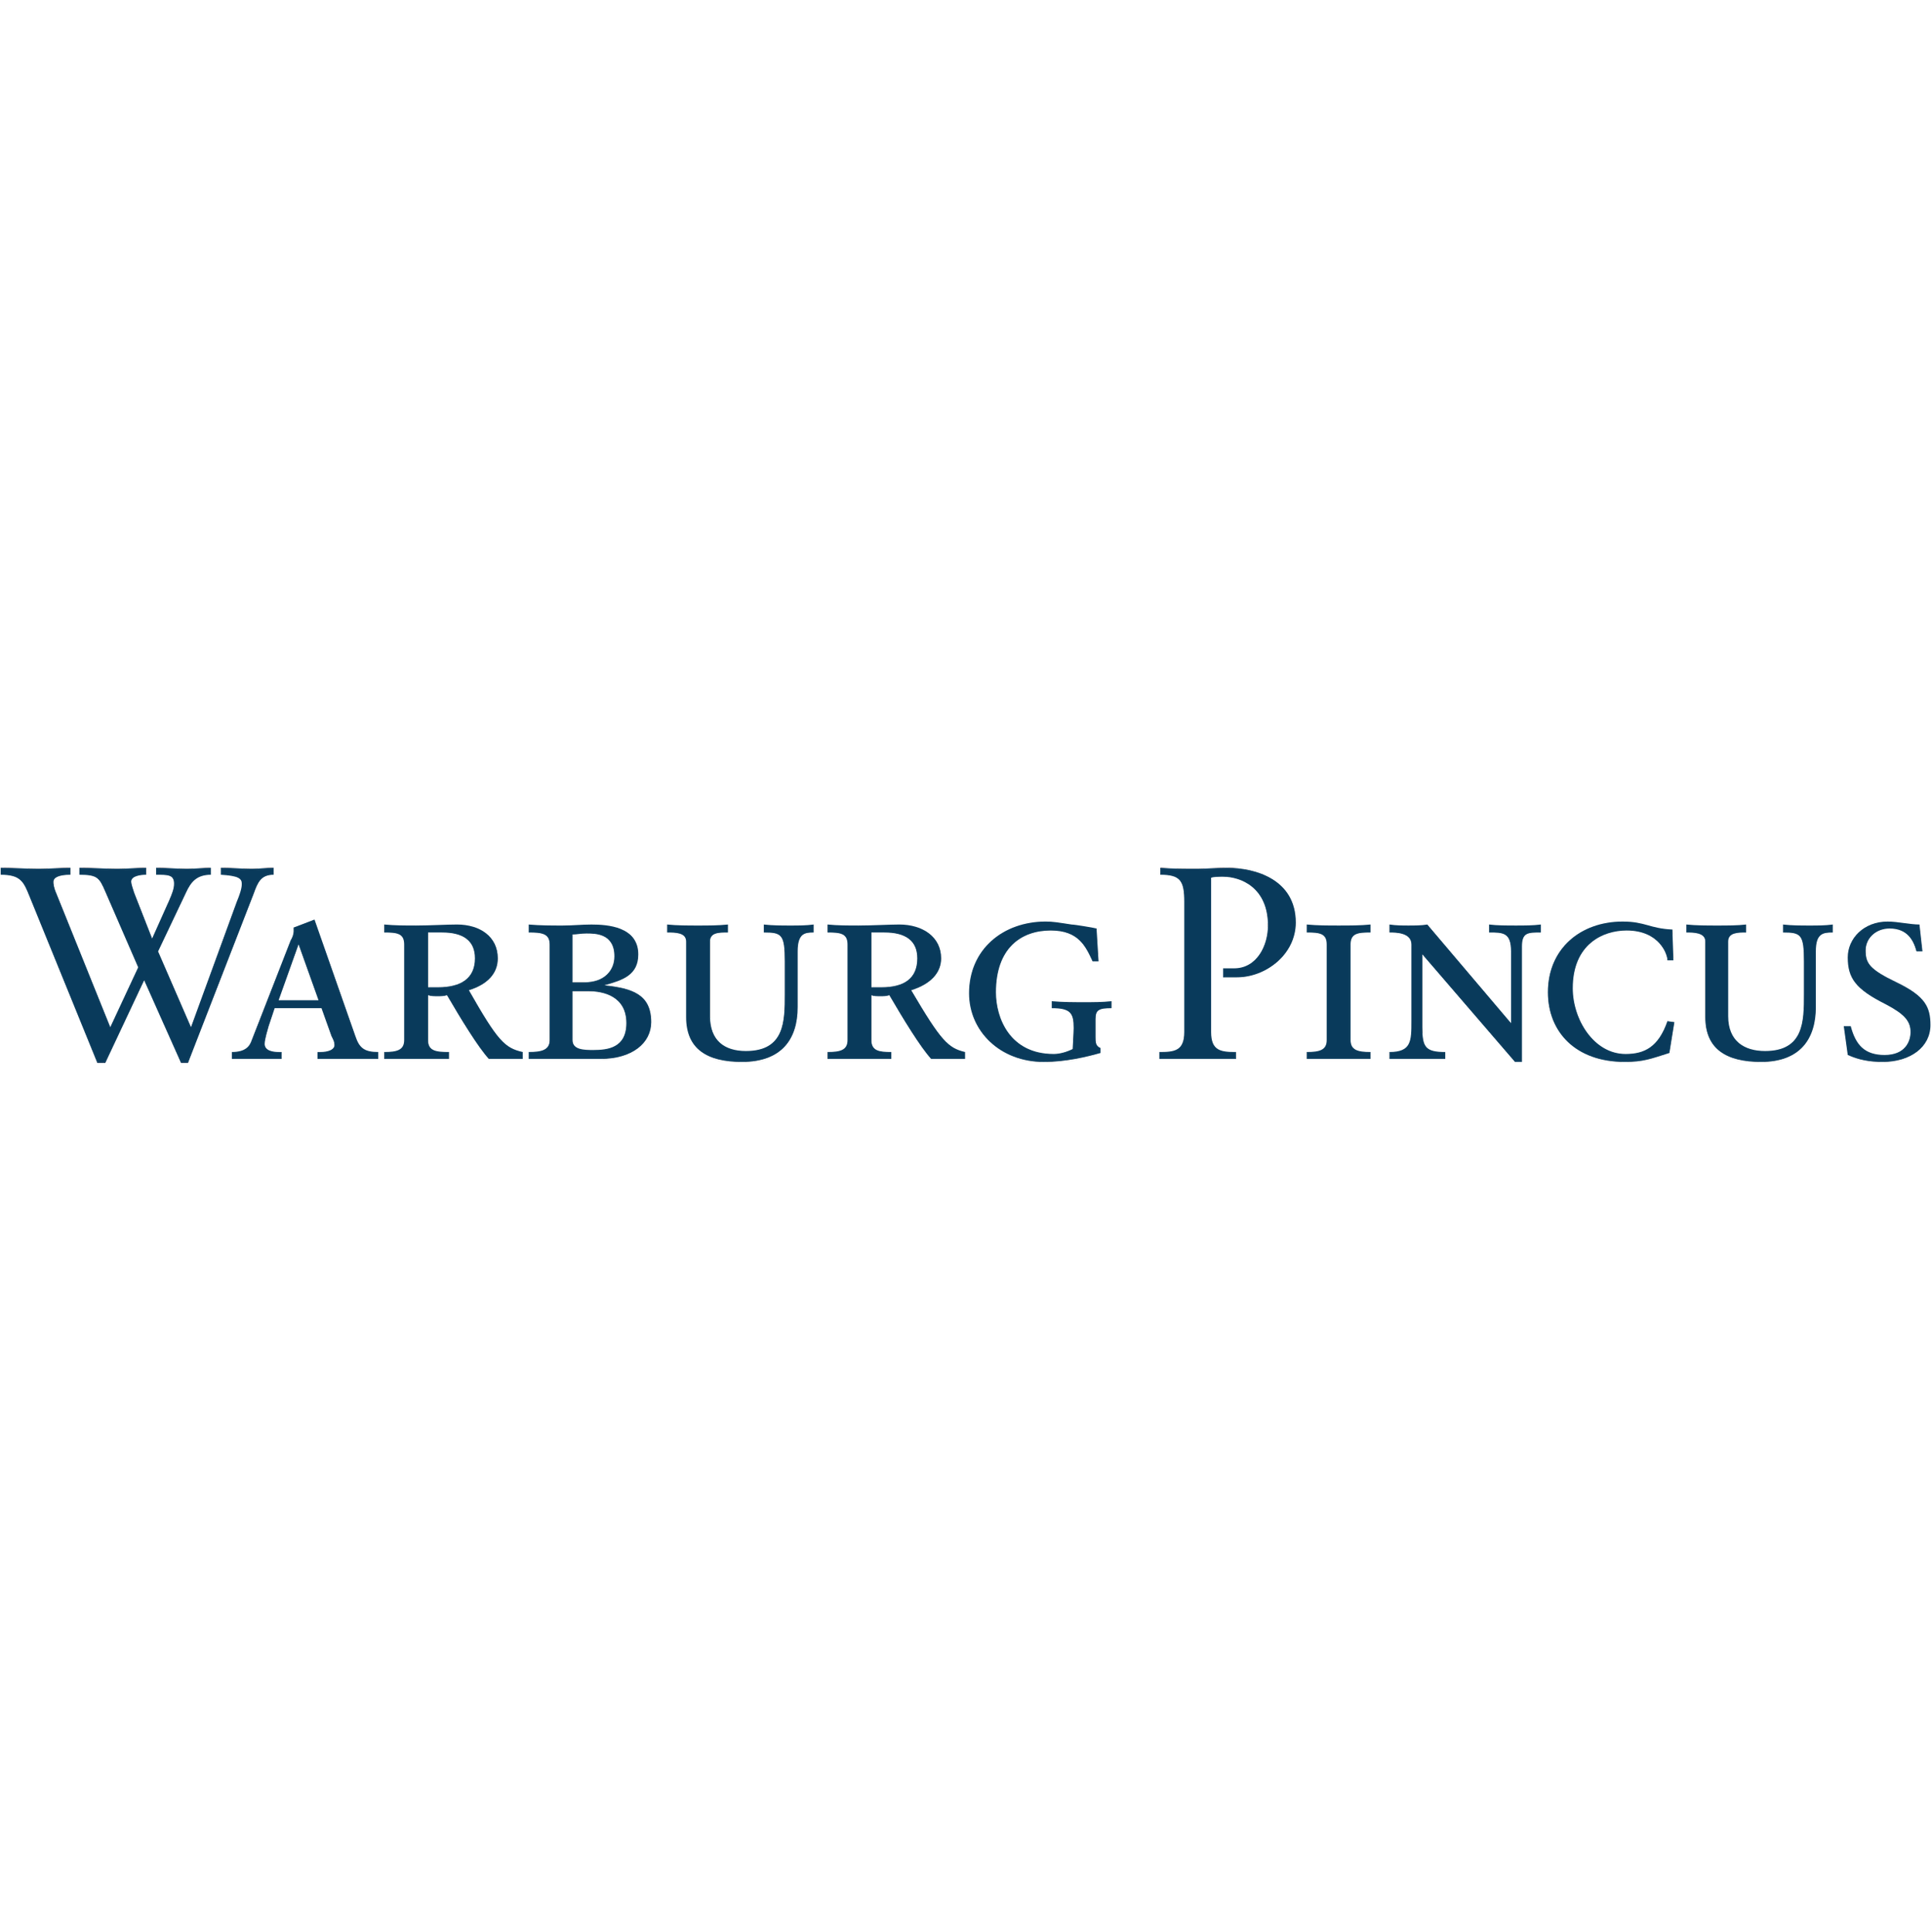 NEW Warburg Pincus Foundation Logo Transparent BG.png